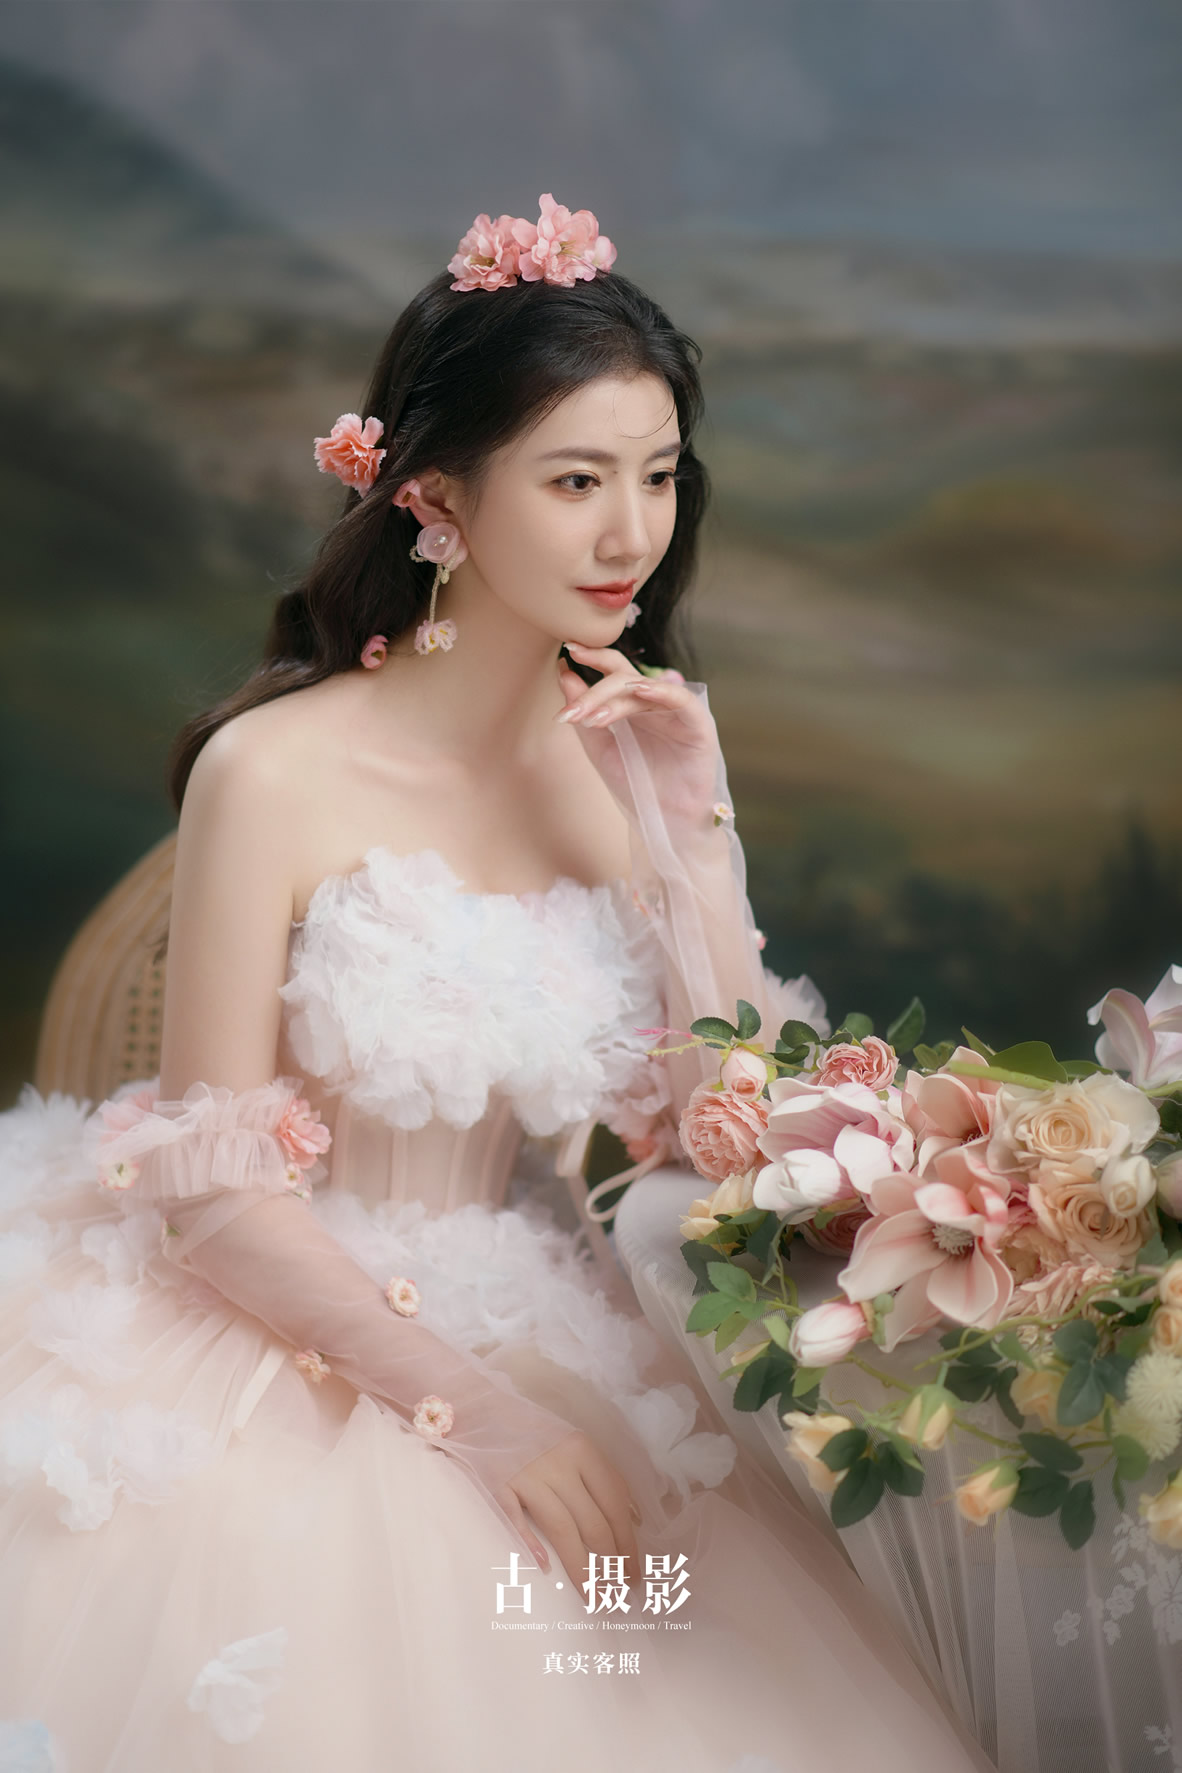 闫先生 裴小姐 - 每日客照 - 广州婚纱摄影-广州古摄影官网